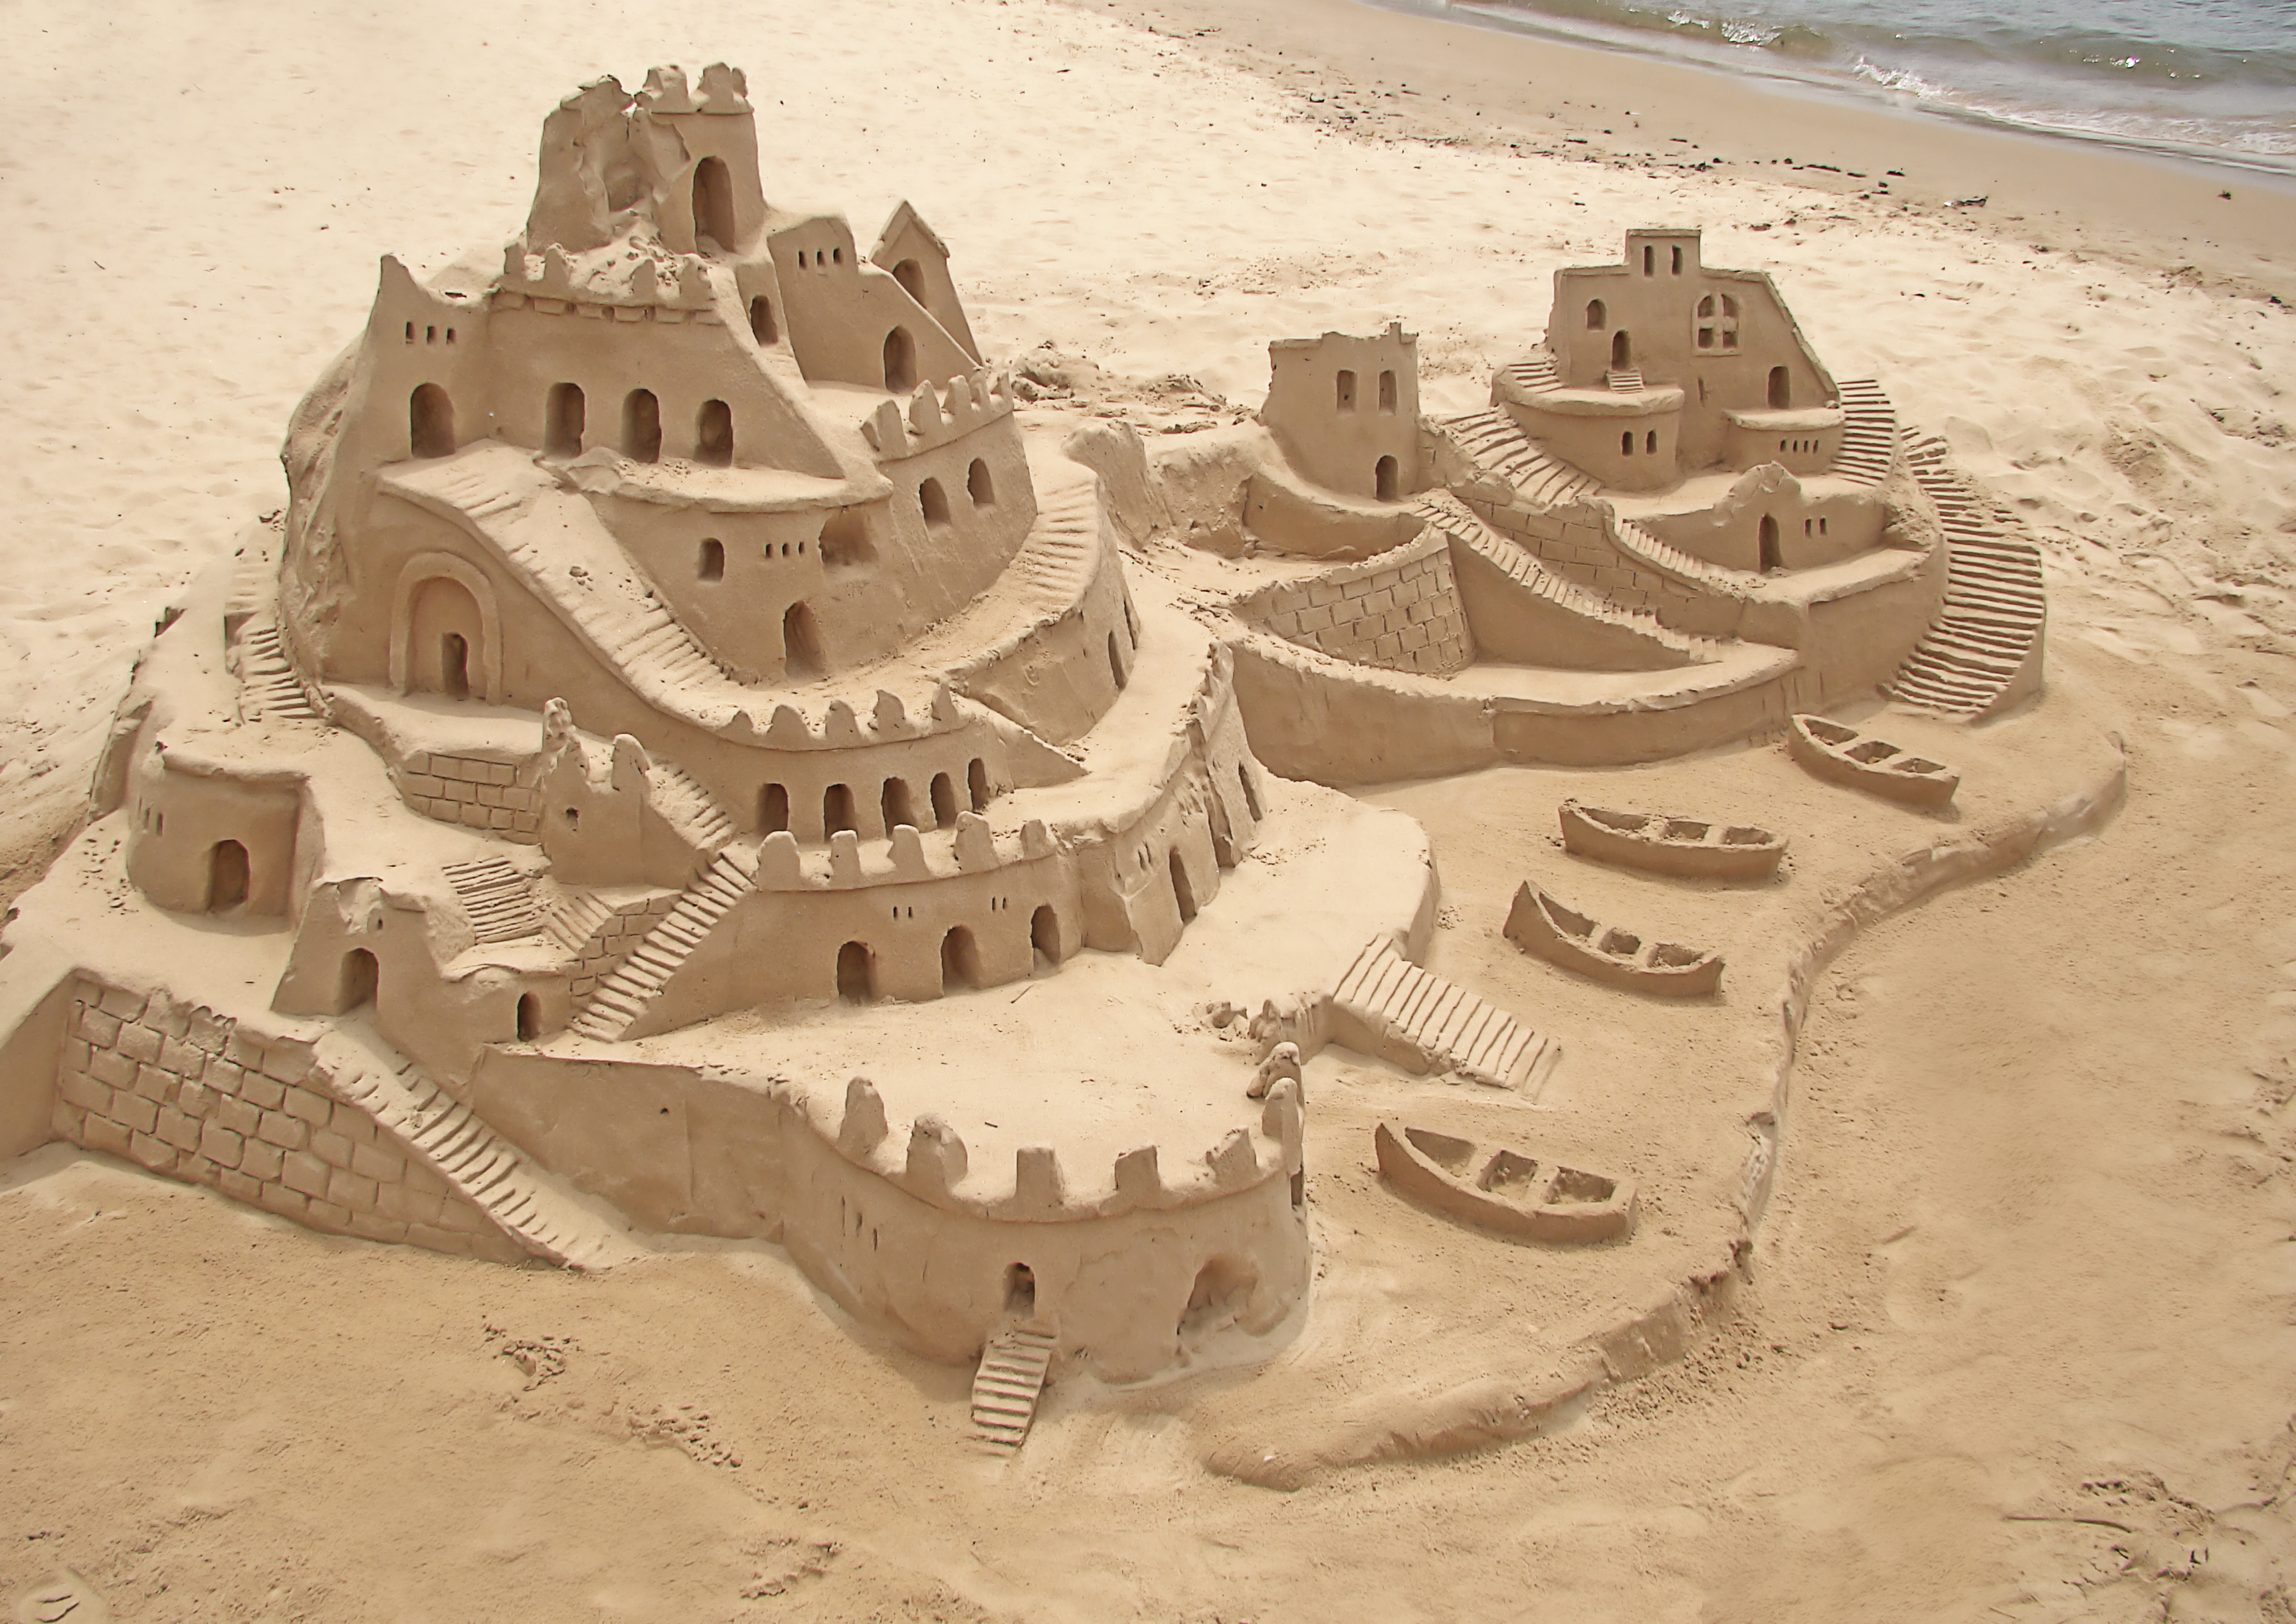 Building a sand castle